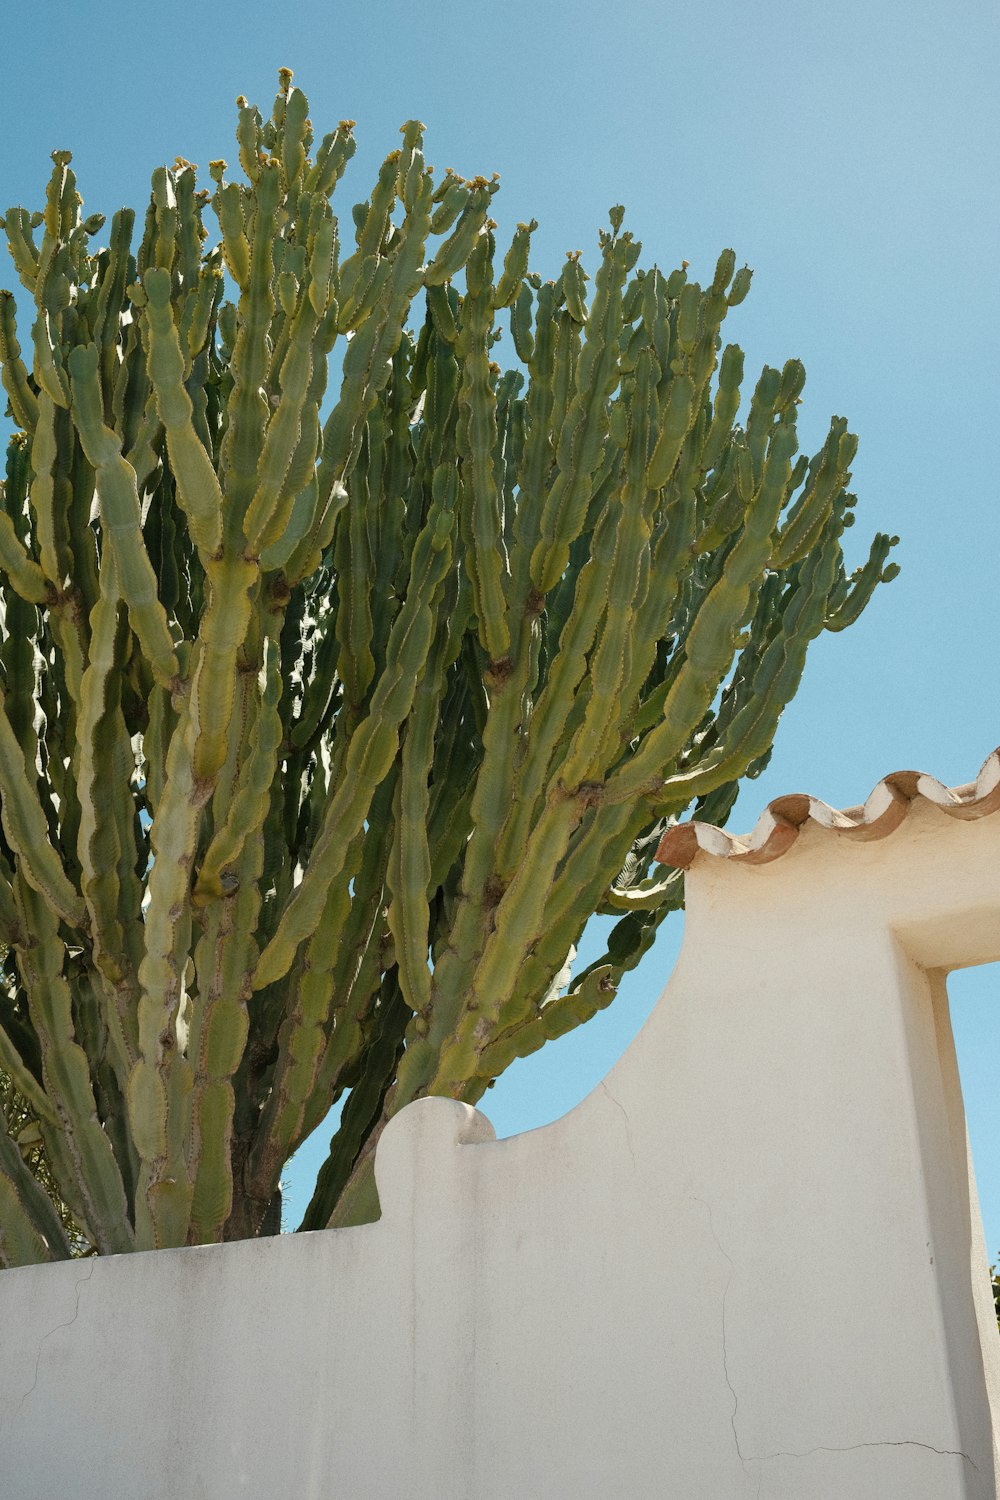 a large cactus plant